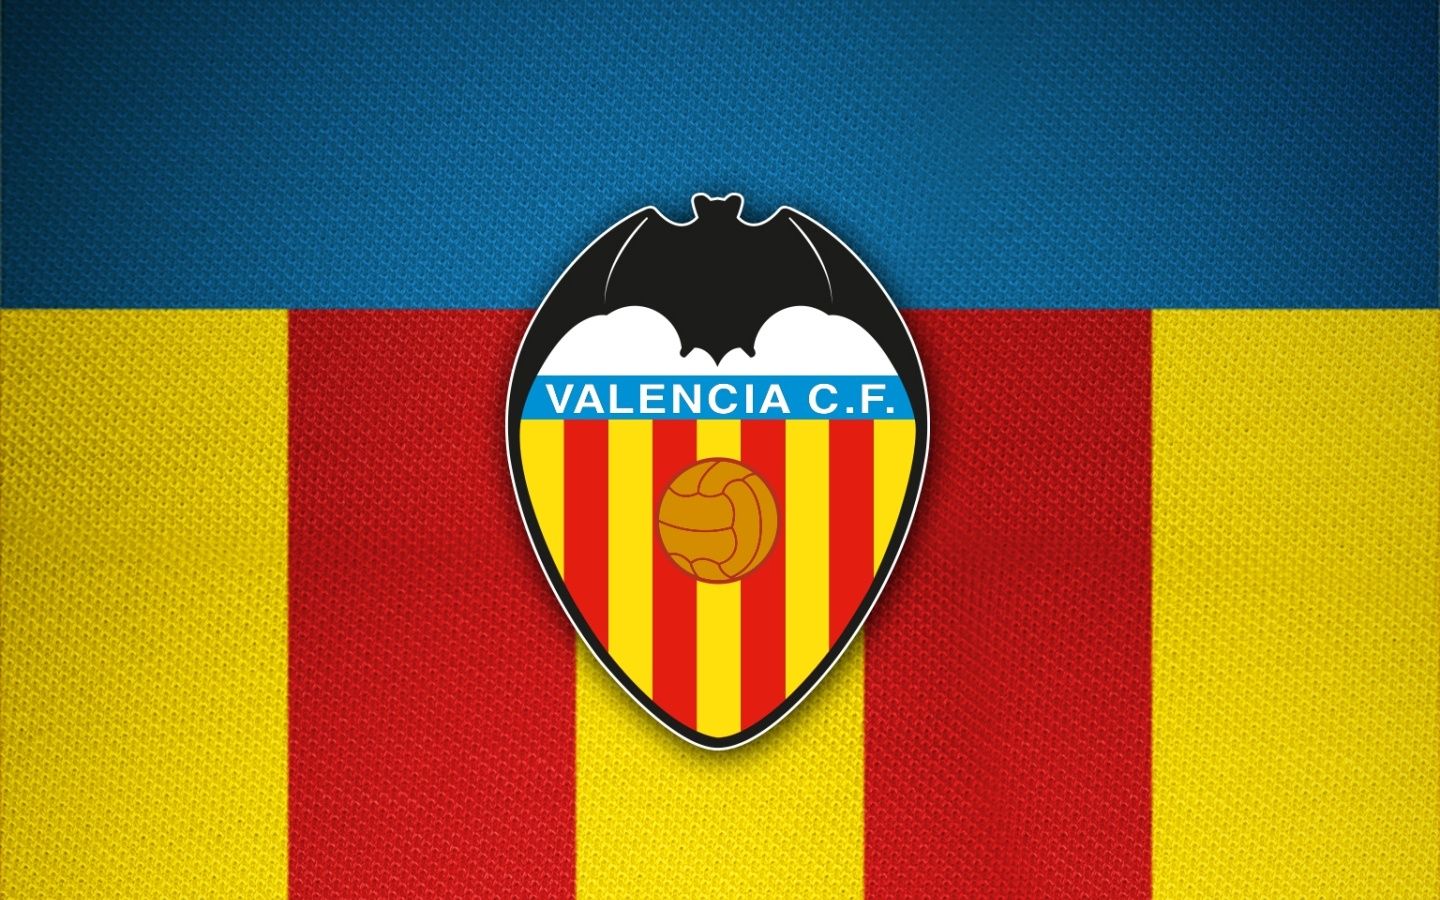 Fondos de fútbol del Valencia CF - 1440x900 - 546375